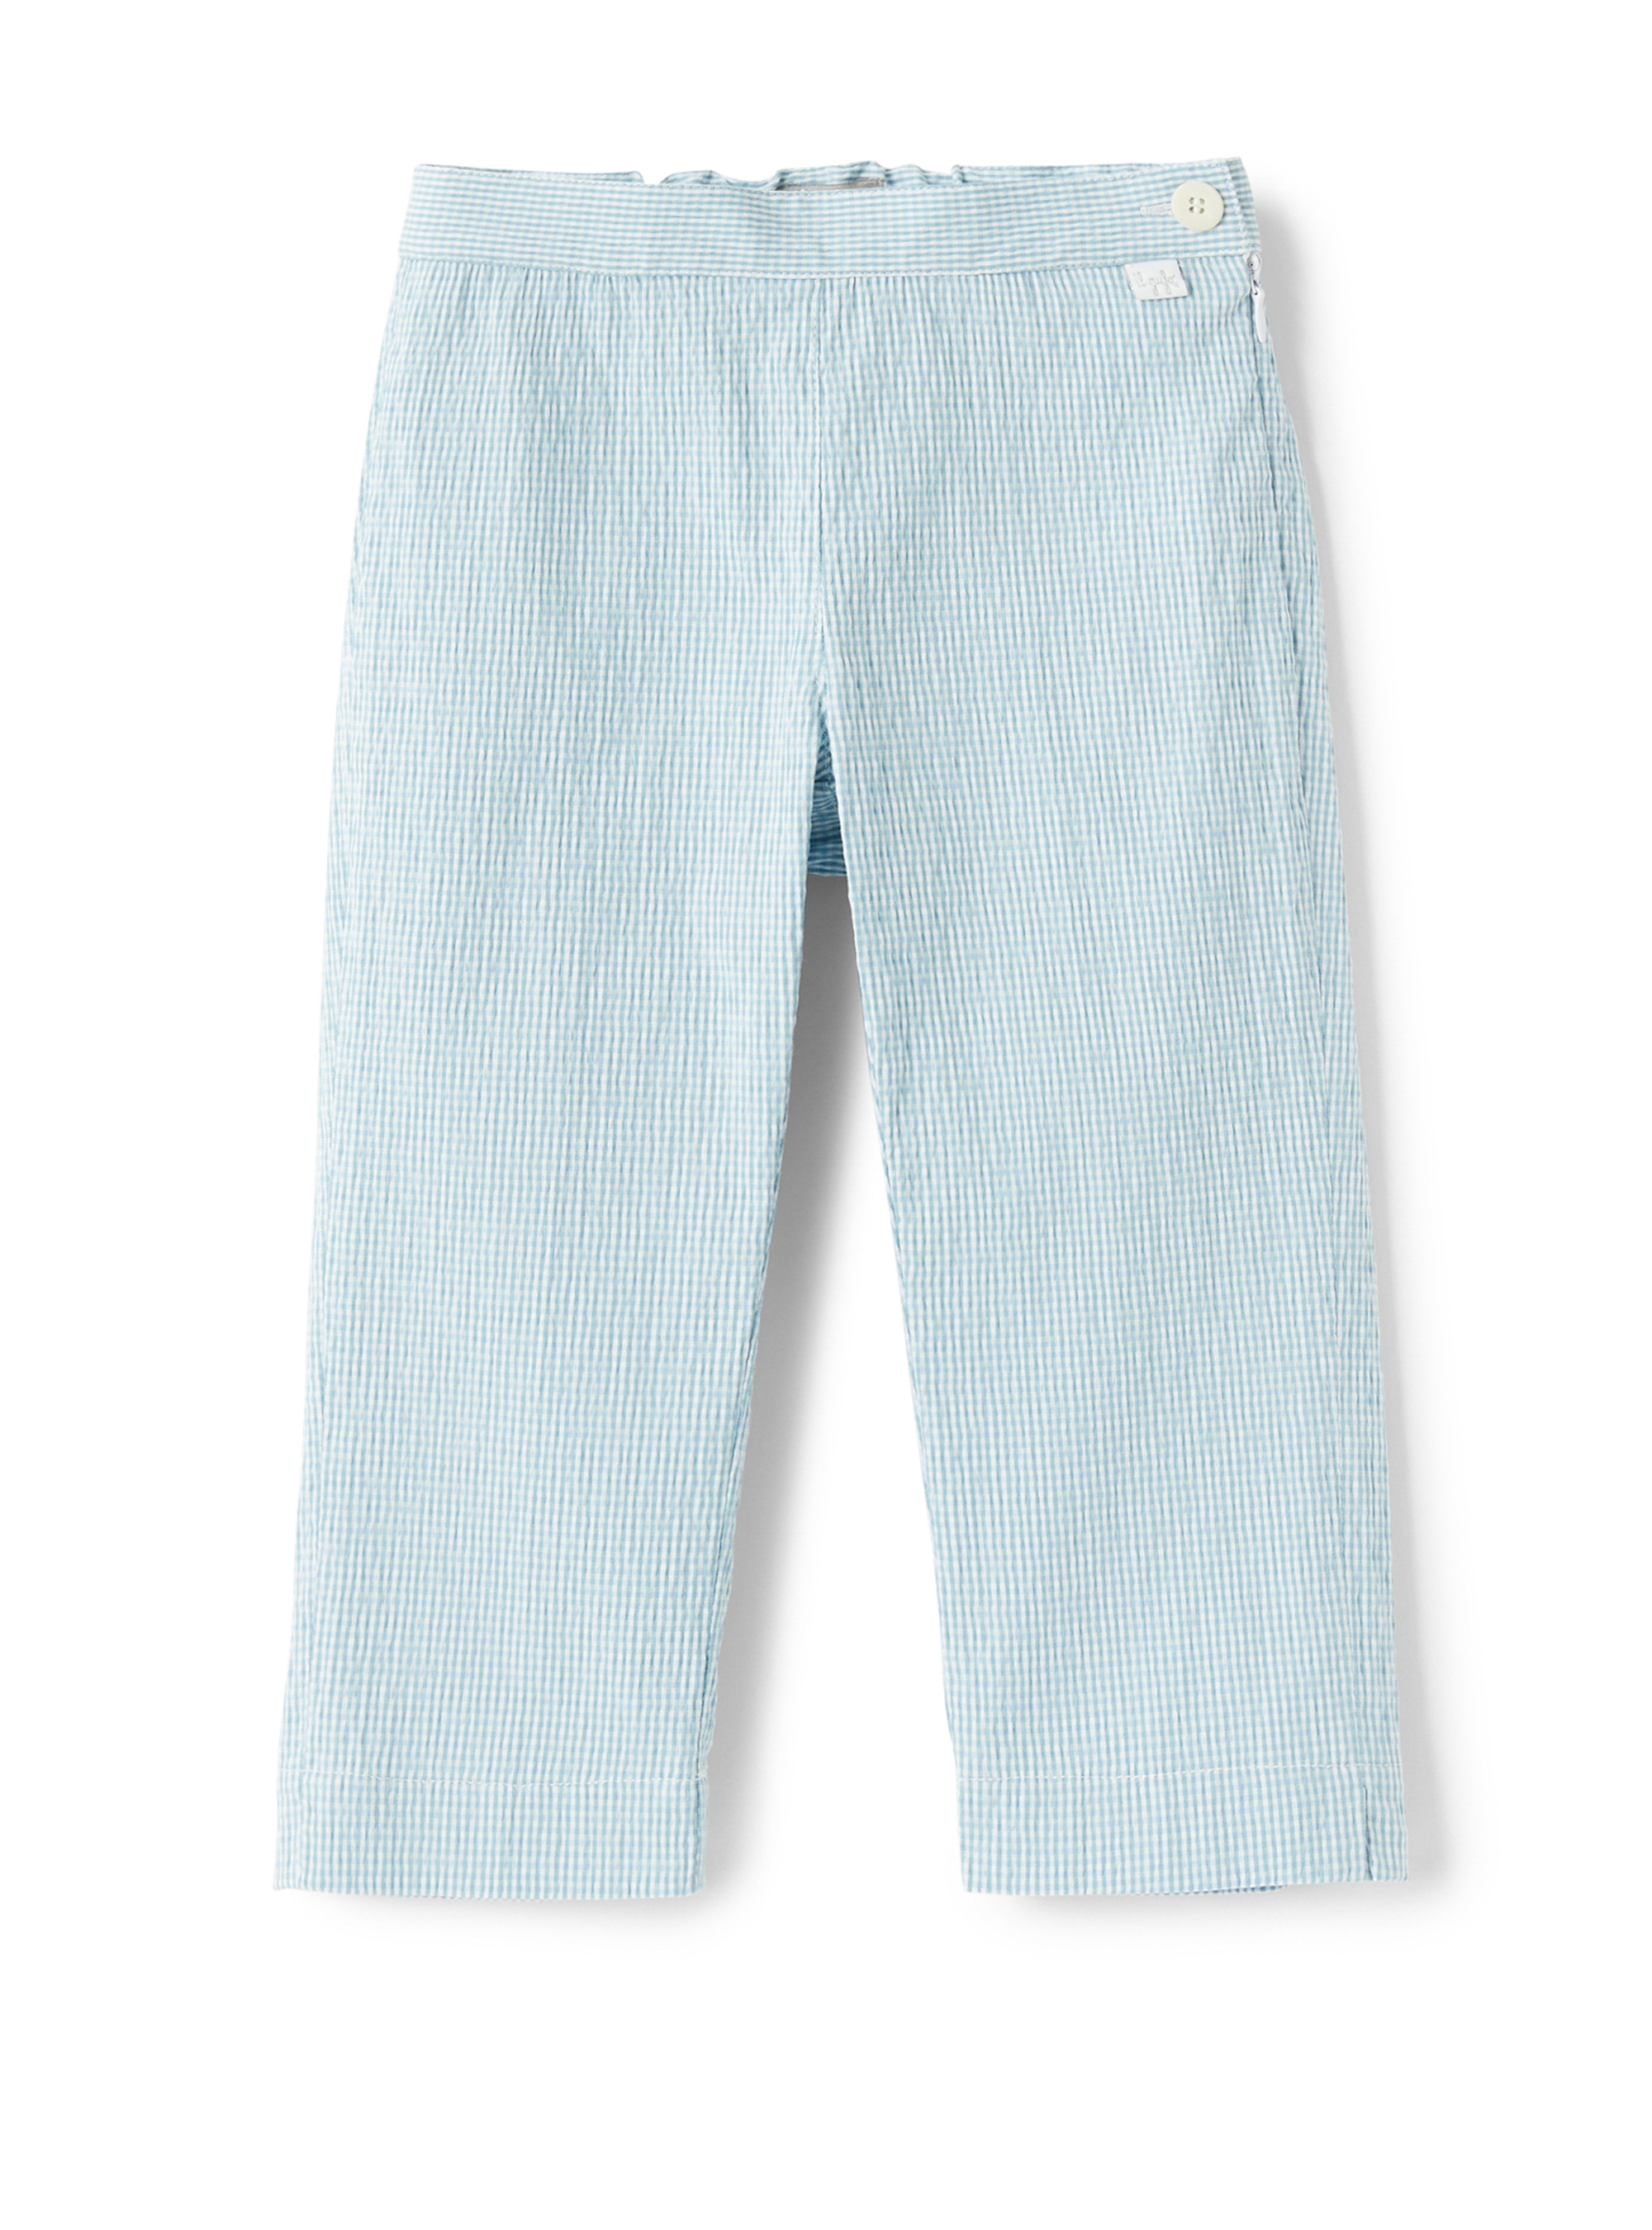 Micro pantalon capri Vichy bleu clair - Pantalons - Il Gufo